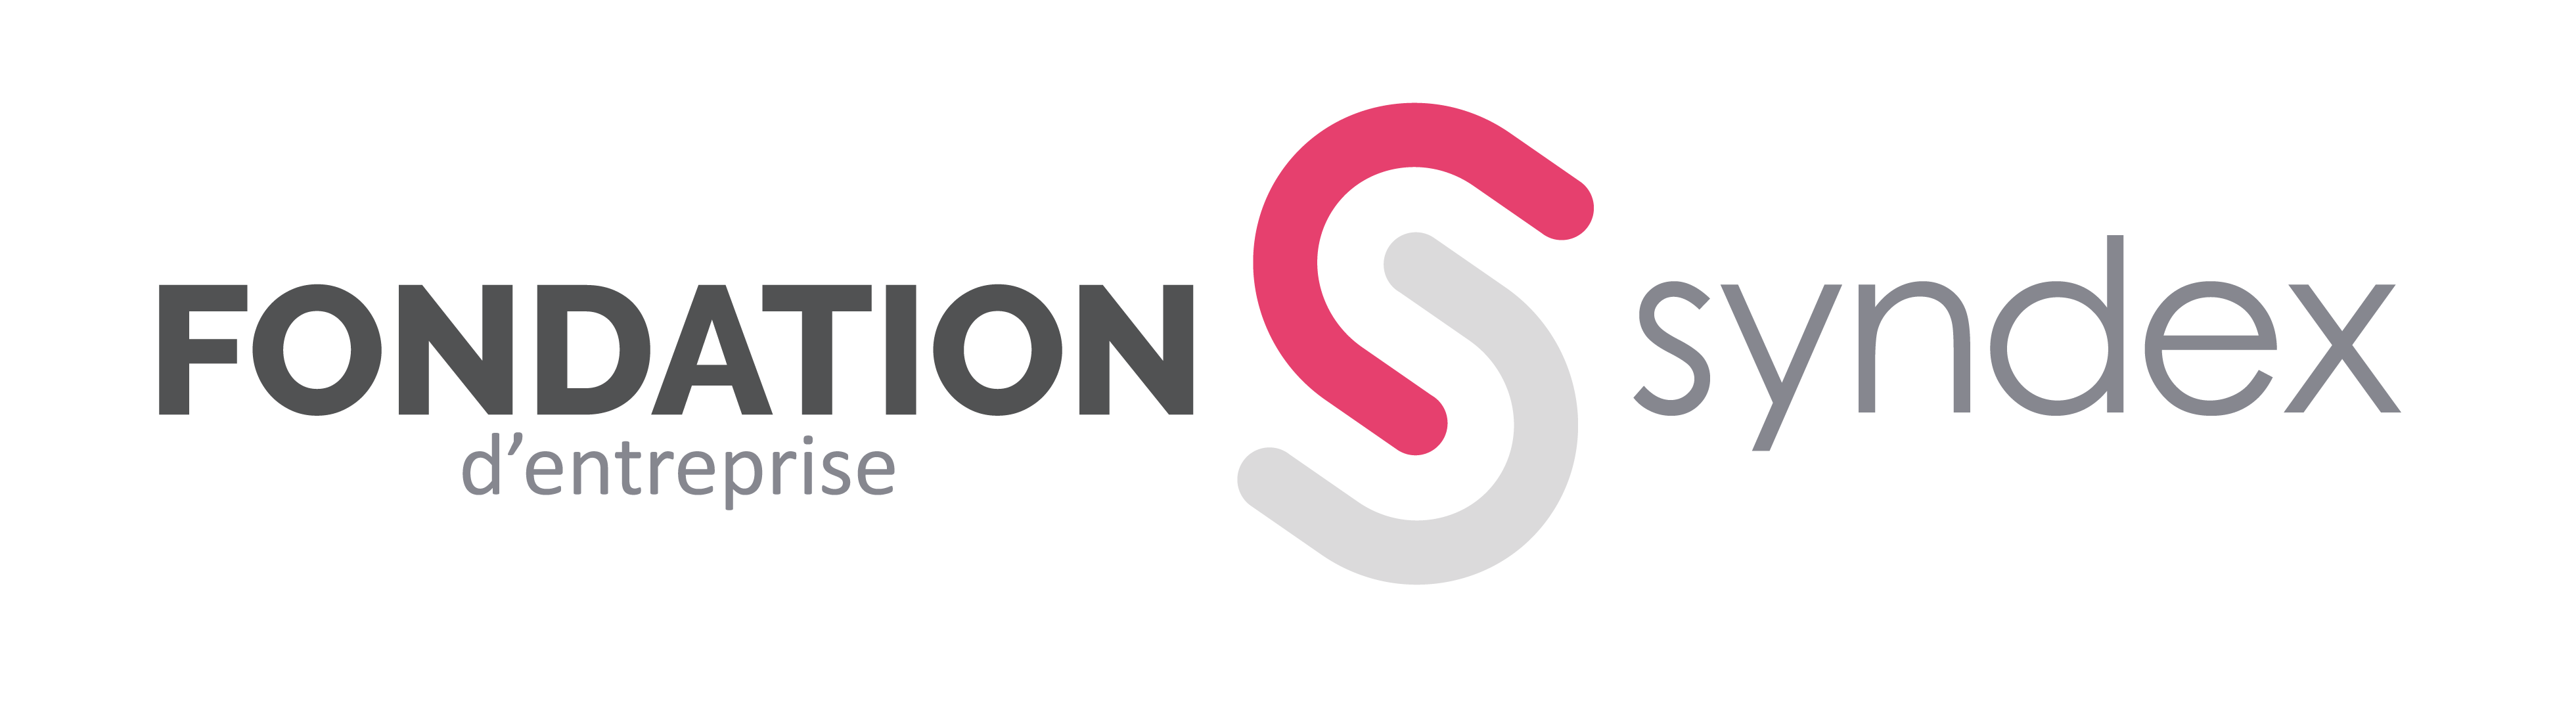 Syndex_Fondation_Logo_2020